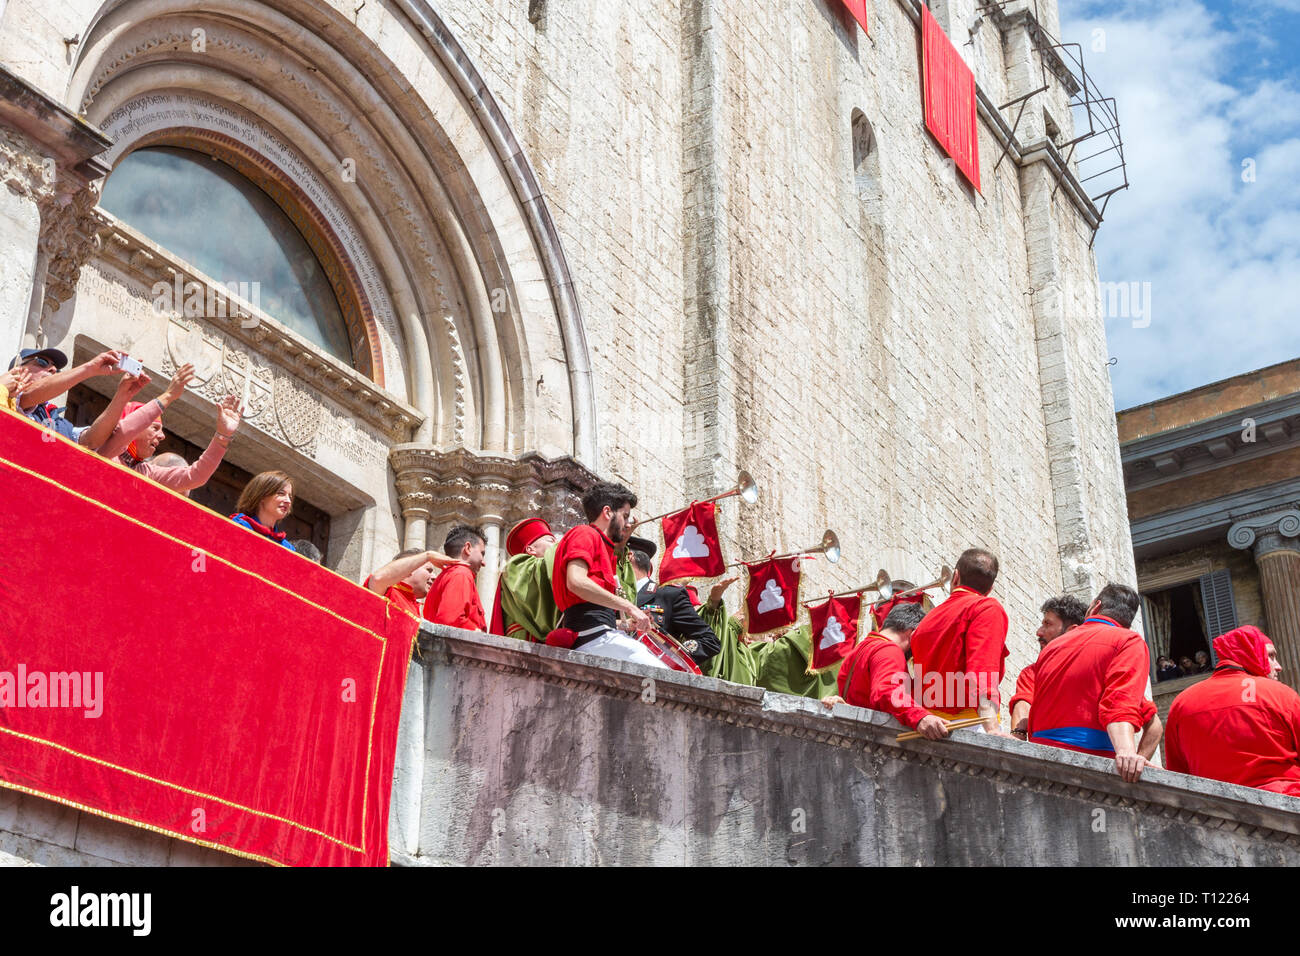 GUBBIO, Italia - 15 Maggio 2016 - i trombettieri fanfara per accogliere i ceri in piazza per celebrare l'annuale Festa dei Ceri. Foto Stock